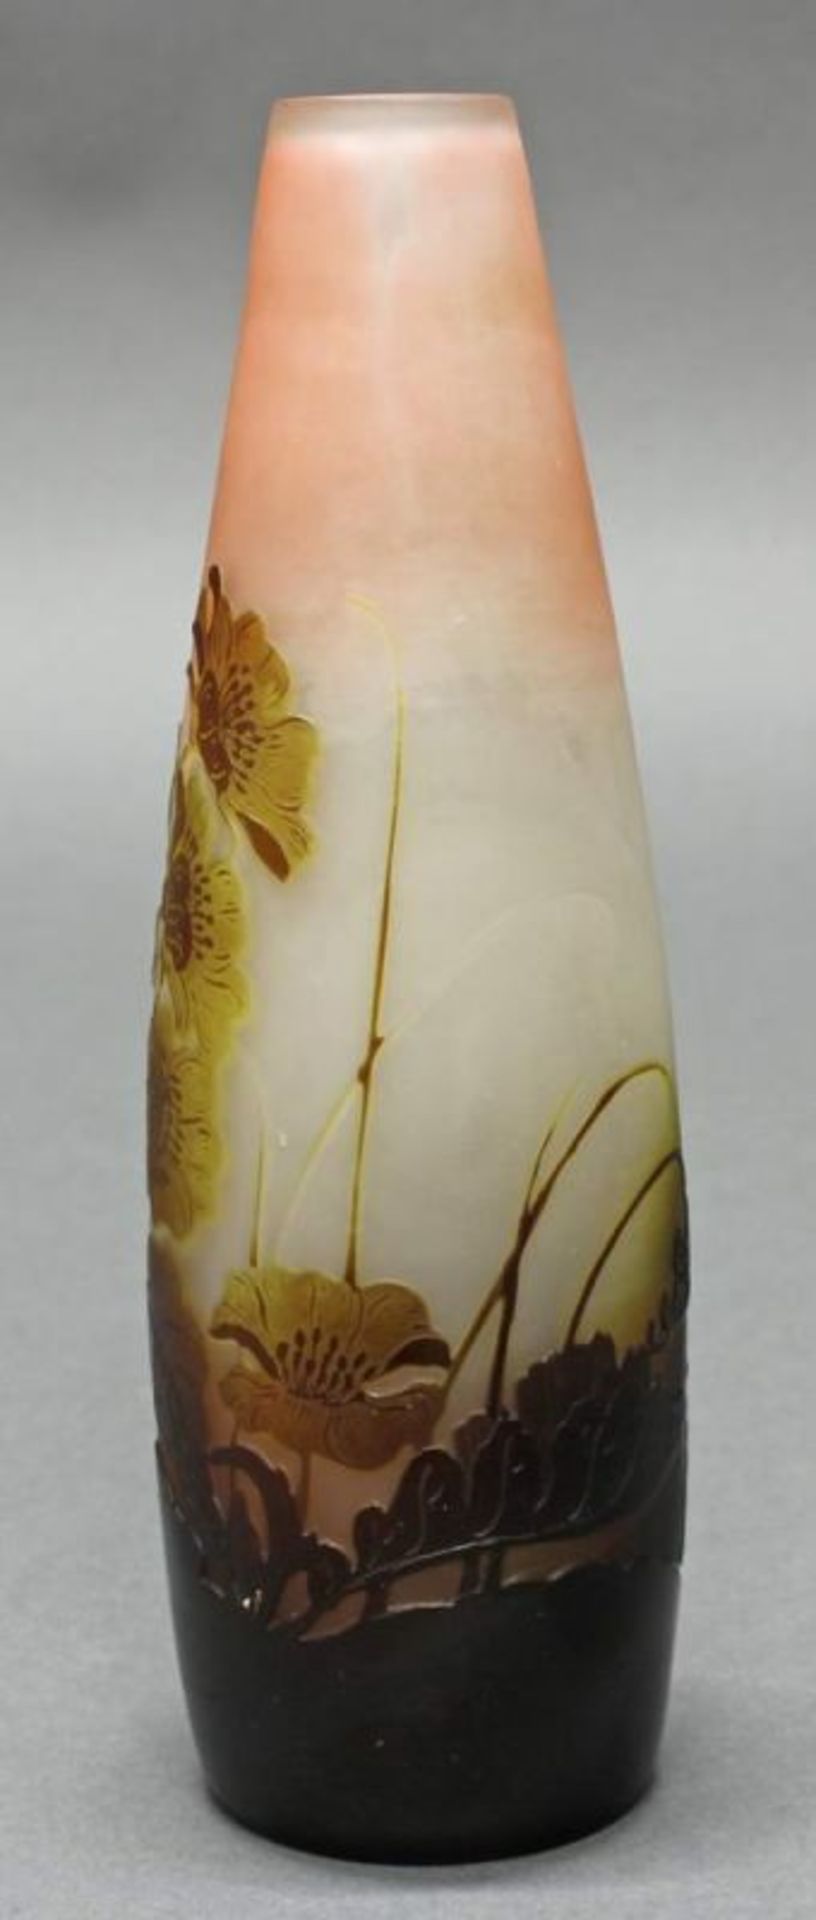 Vase, Emile Gallé, 1906-1914, Glas, brauner Überfangdekor mit Hahnenfuß, Abendstimmung, Fond weiß - Image 2 of 4